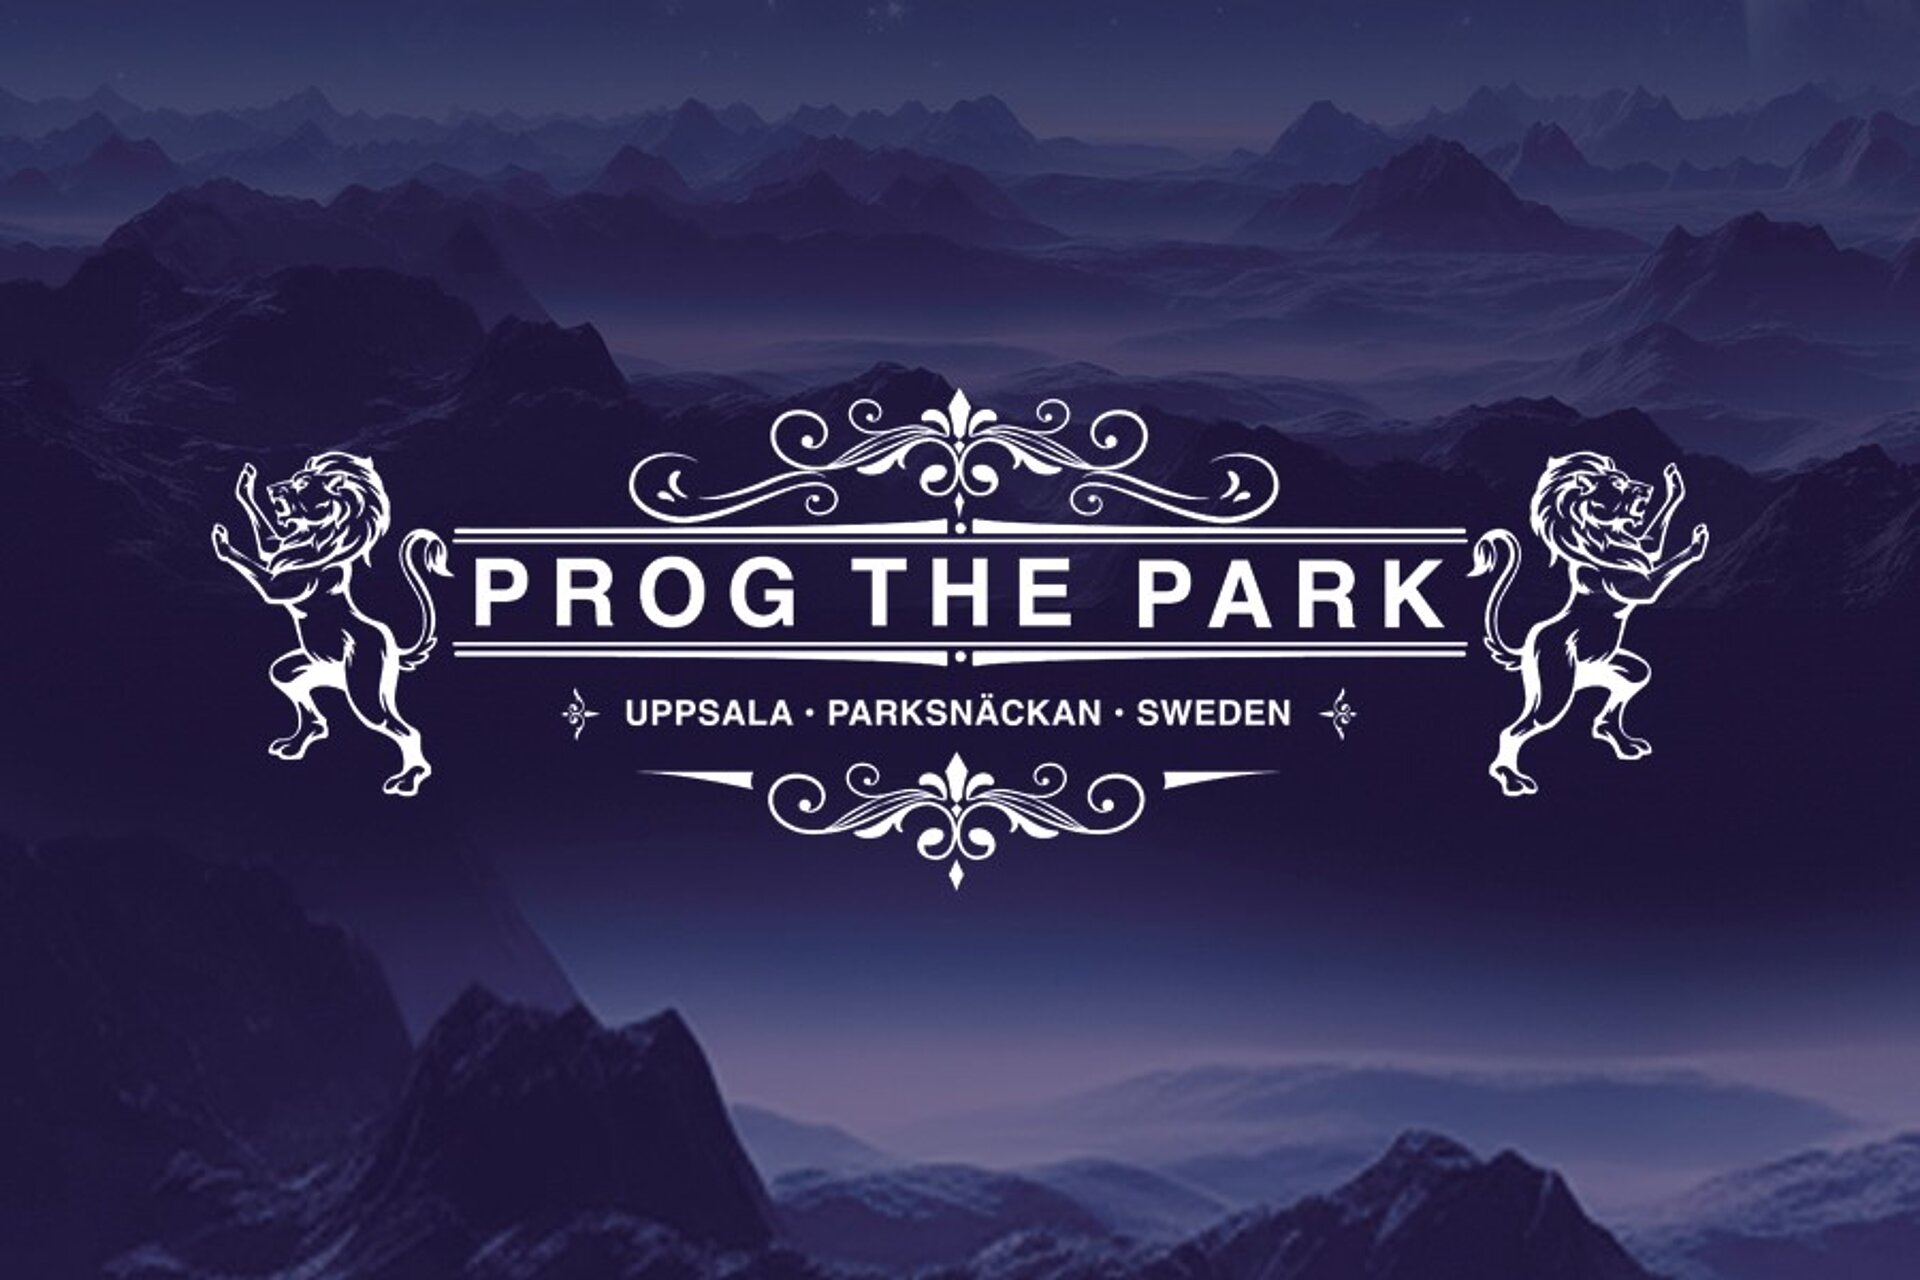 PROG THE PARK